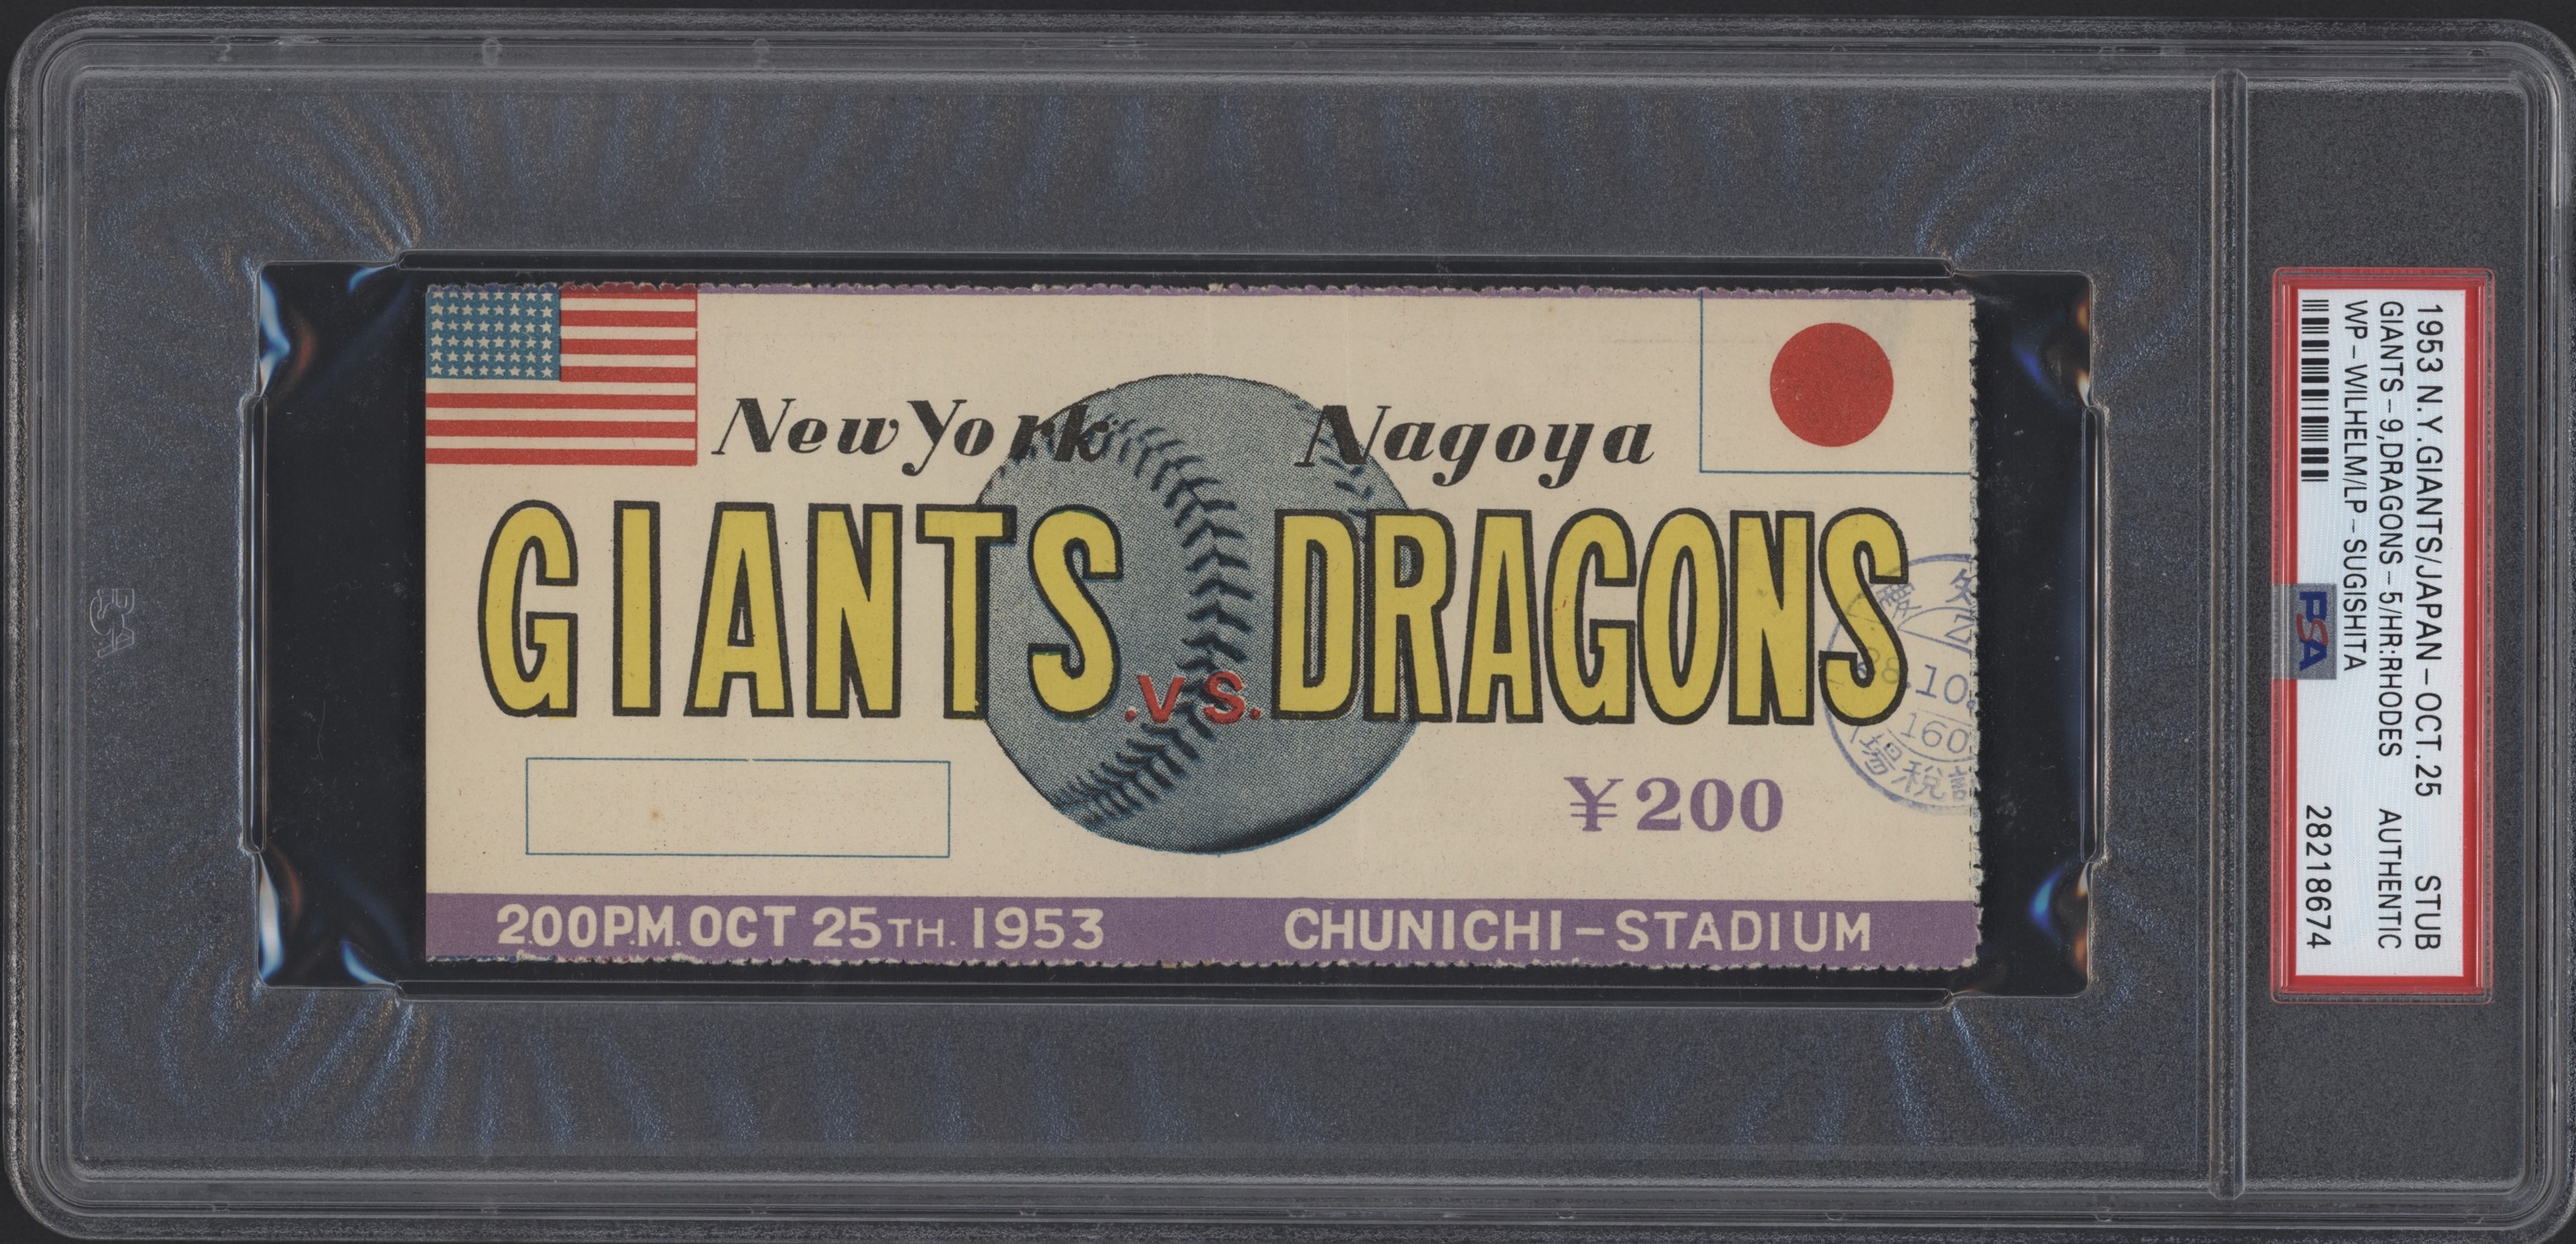 1953 New York Giants vs. Nagoya Dragons Ticket Stub